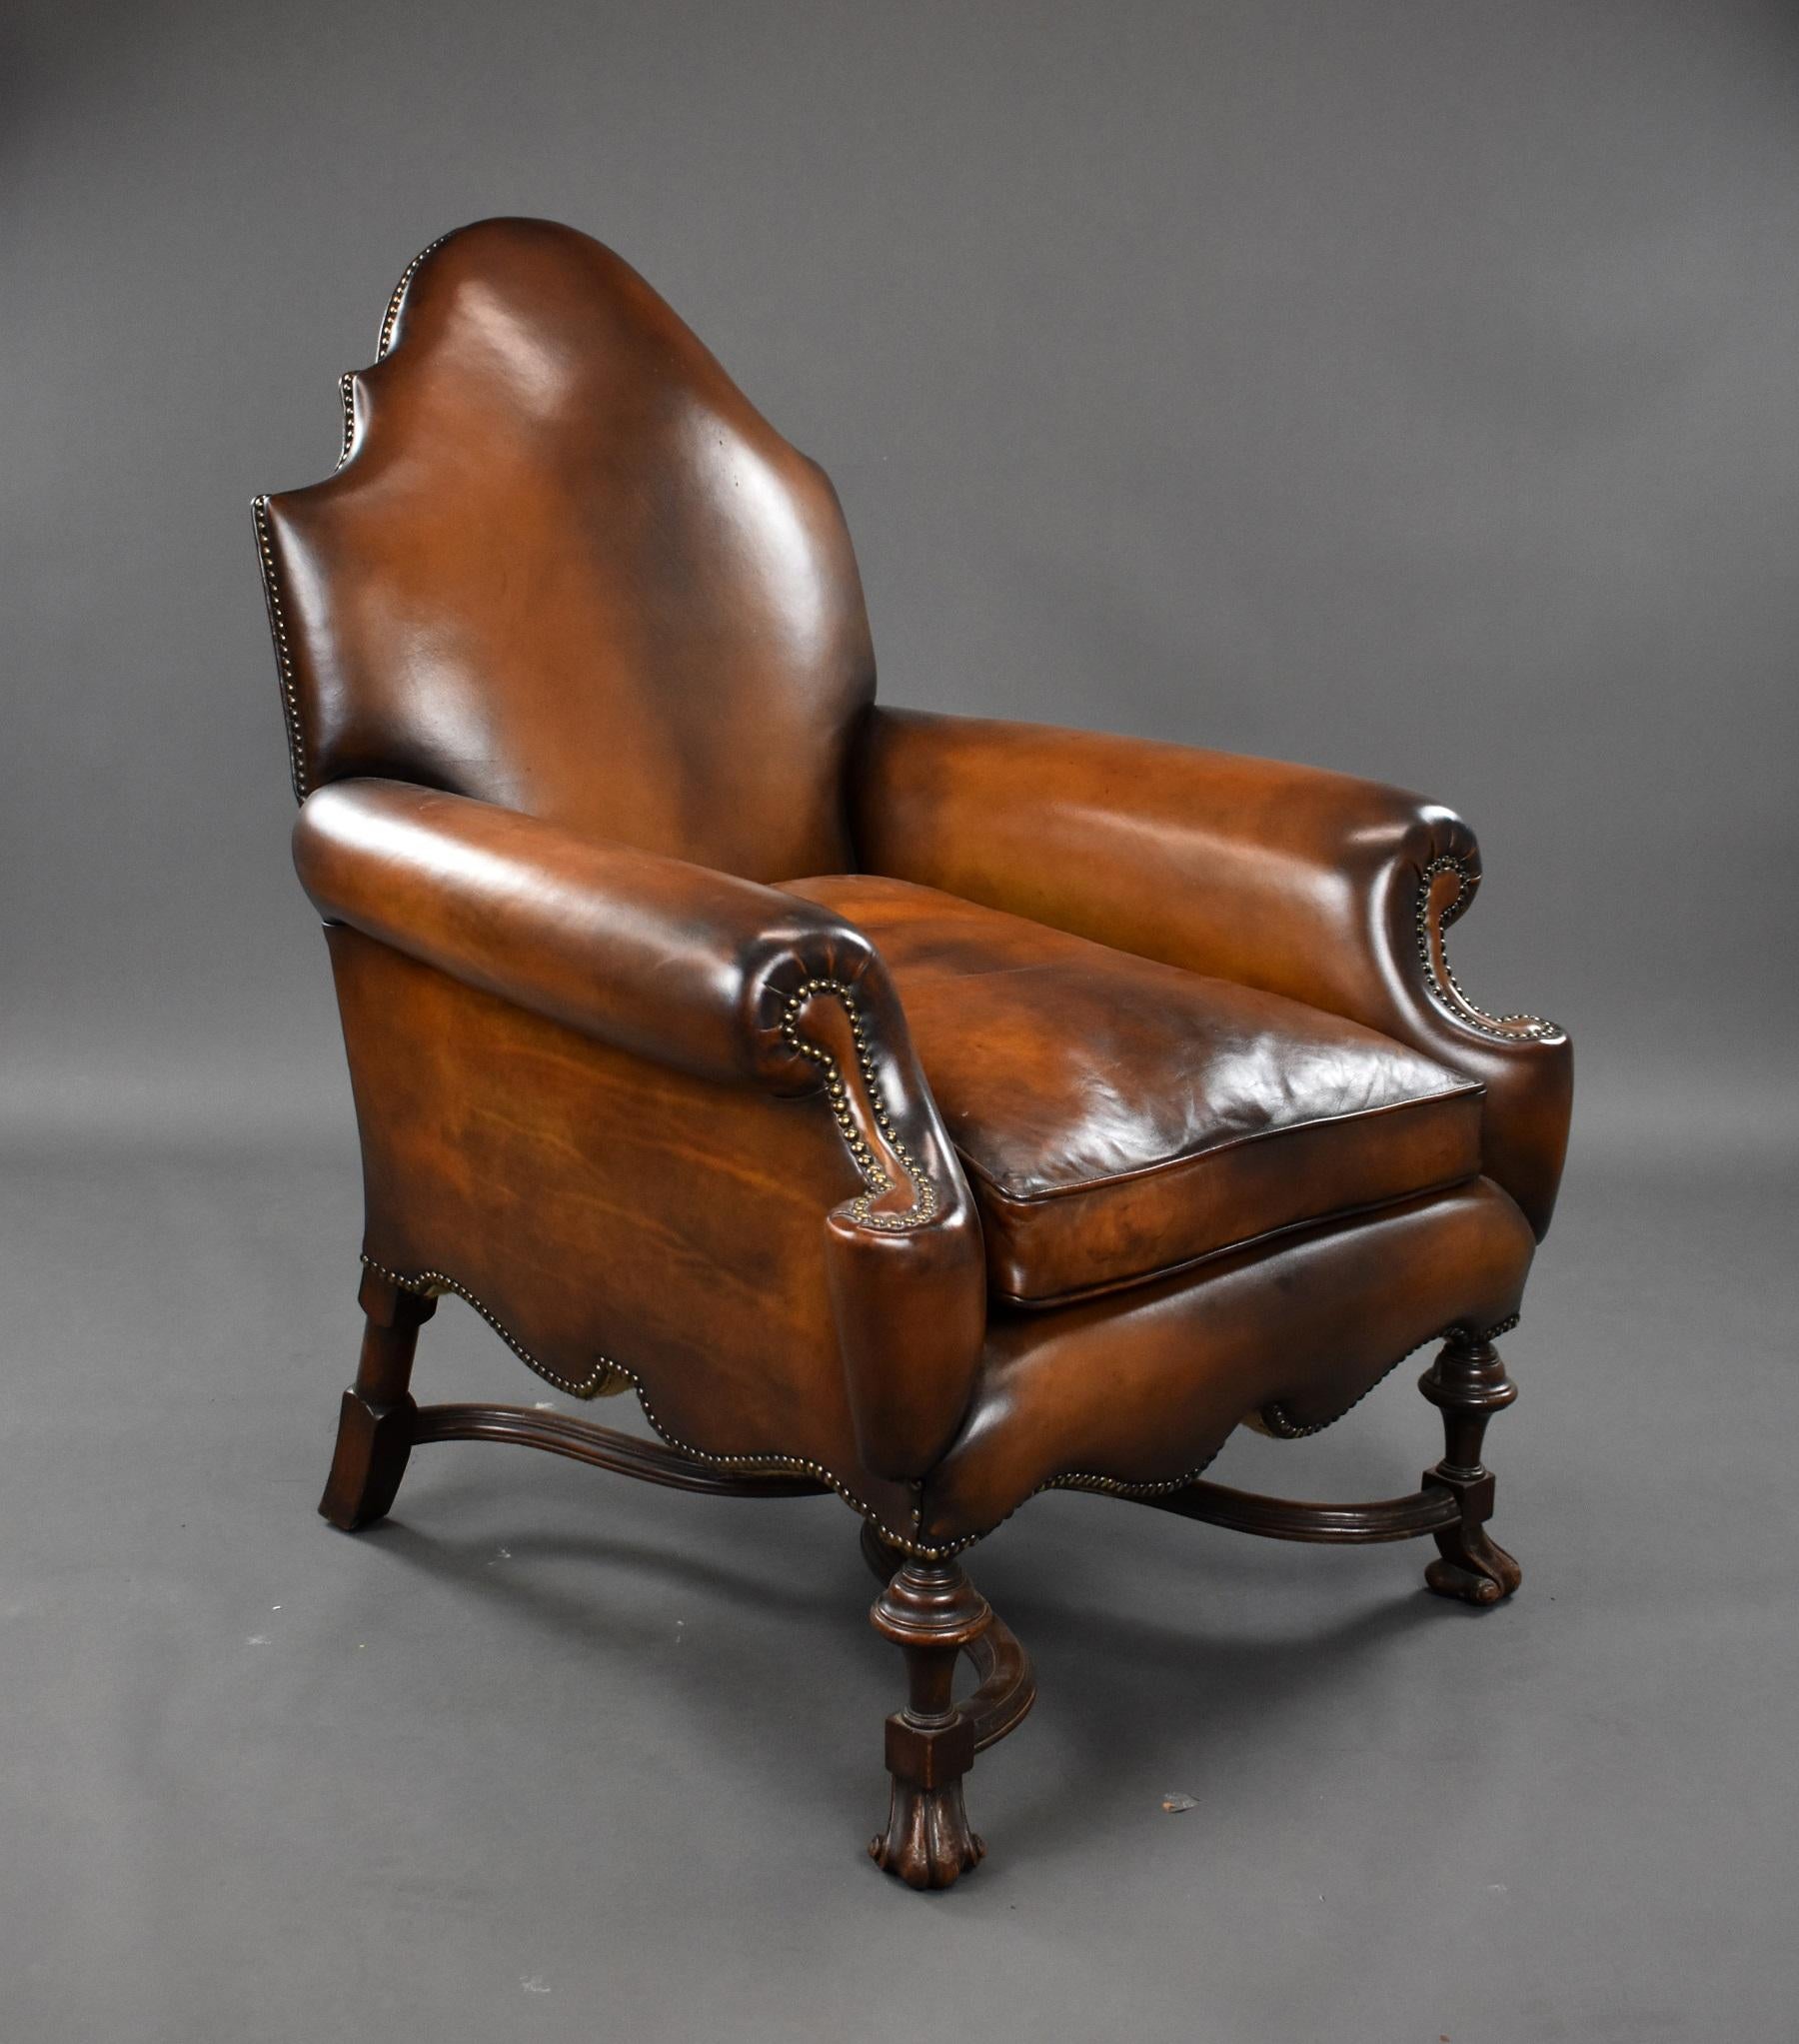 Zum Verkauf steht ein hochwertiger viktorianischer Ledersessel mit Nussbaumrahmen. Der Stuhl hat eine schön geformte Rückenlehne und Armlehnen und steht auf geschnitzten Füßen, die durch eine geformte Bahre mit einem Abschluss in der Mitte verbunden